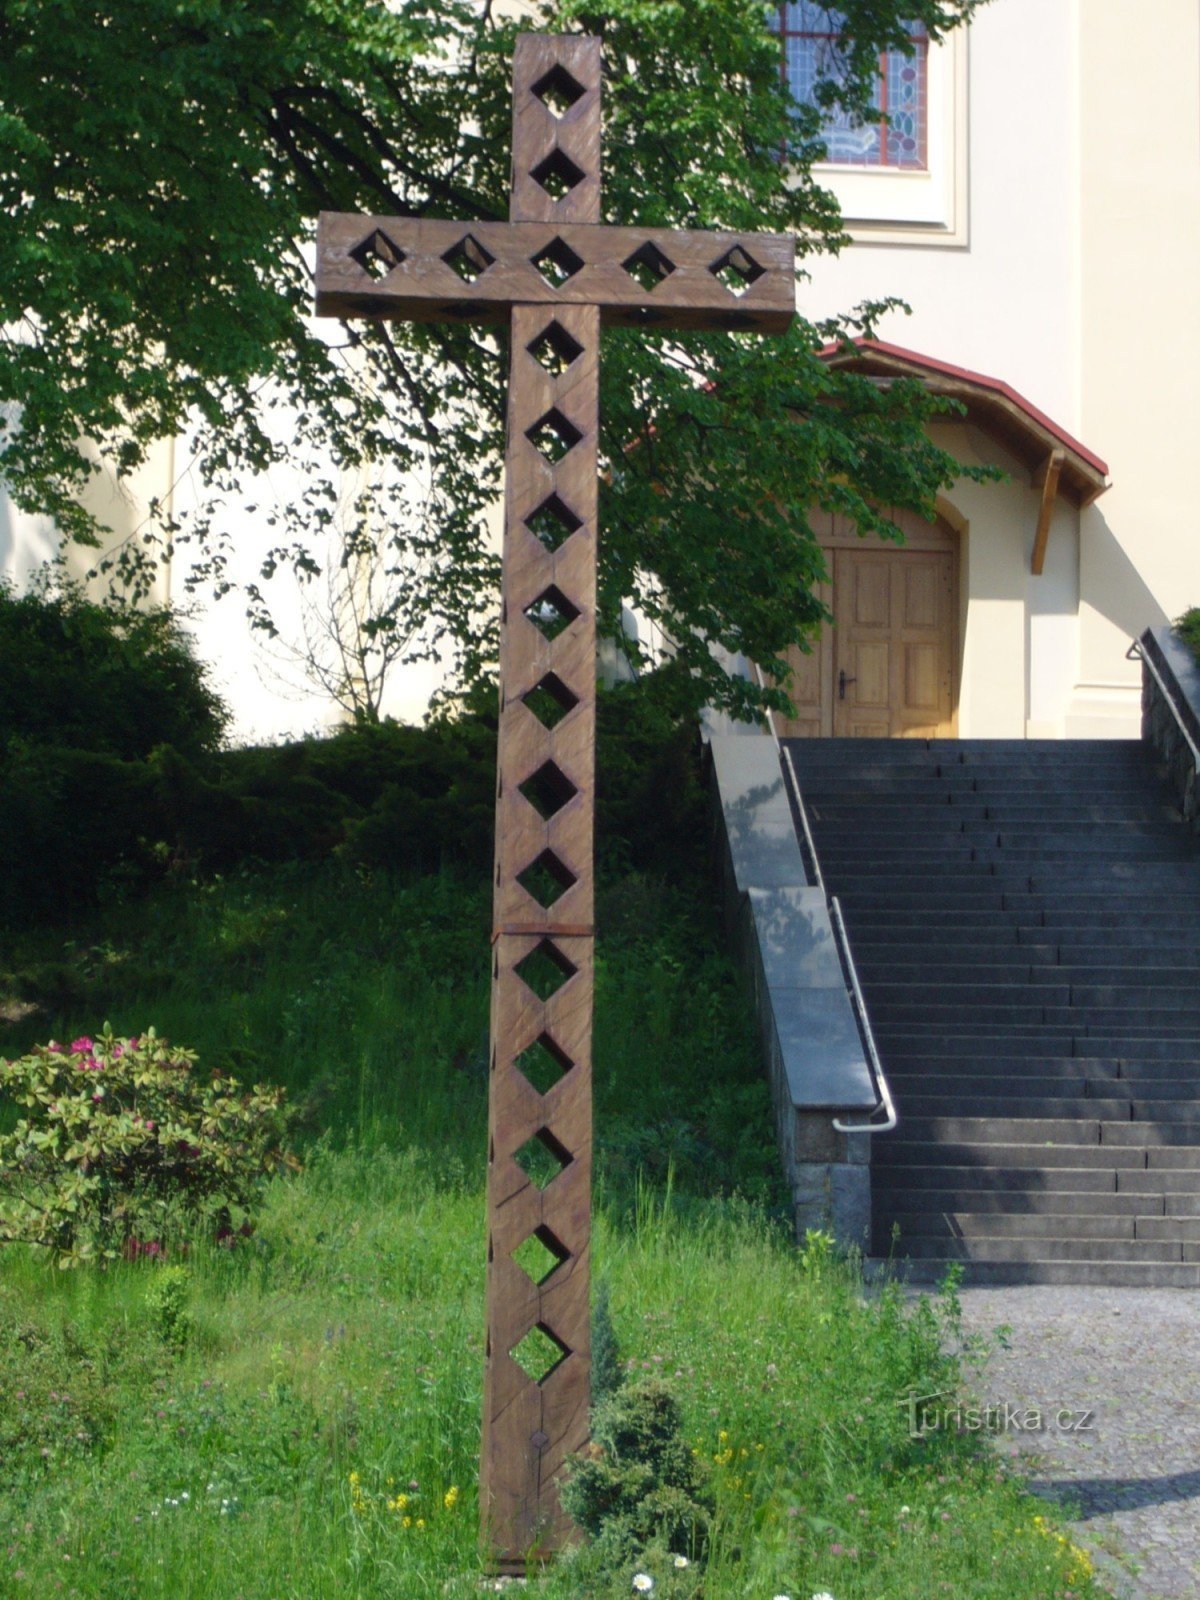 Plesná - croix devant l'église de St. Jakub